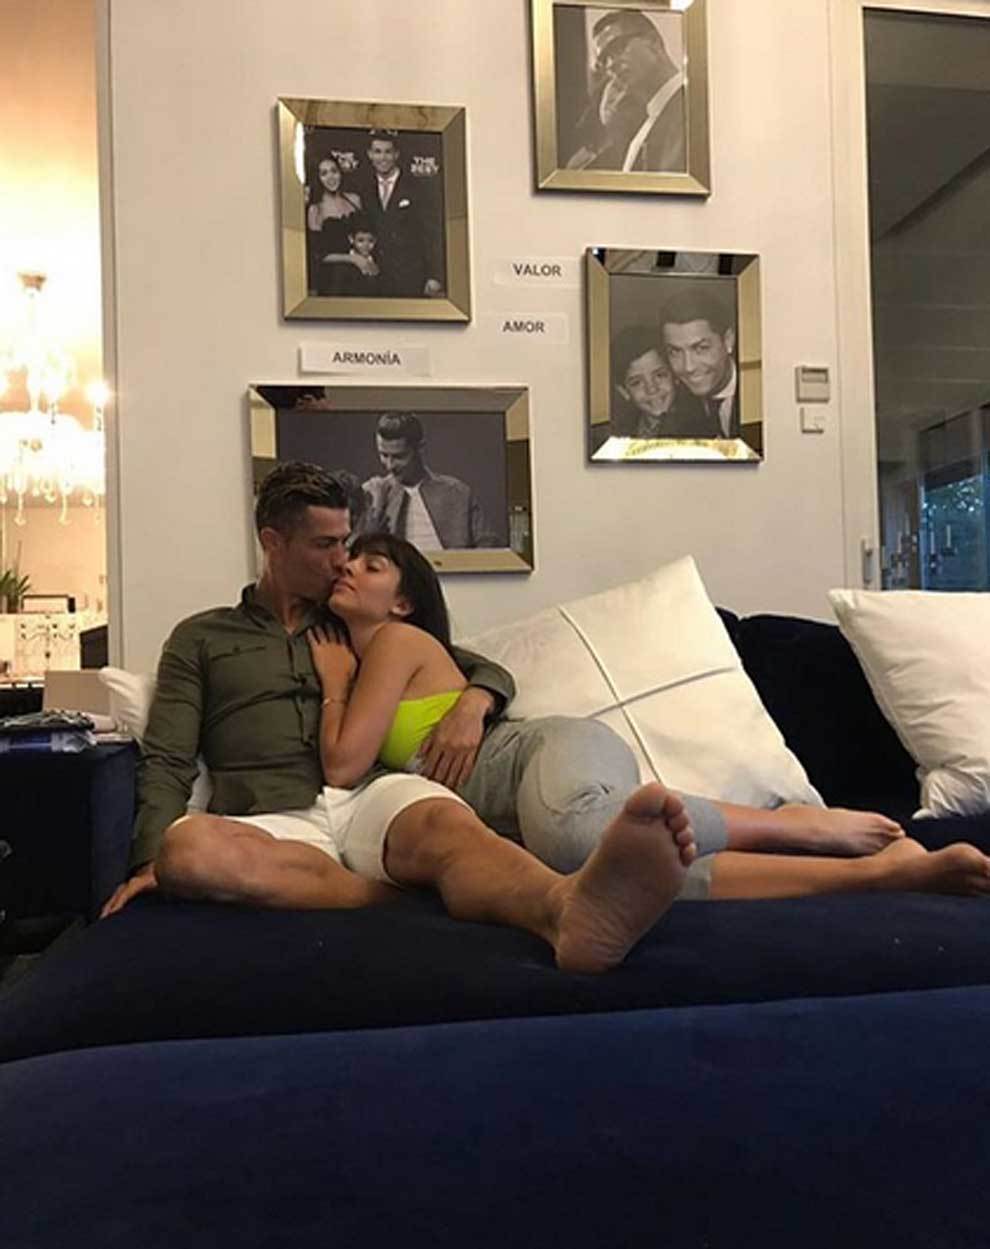 El romntico abrazo de Cristiano Ronaldo y Georgina Rodrguez